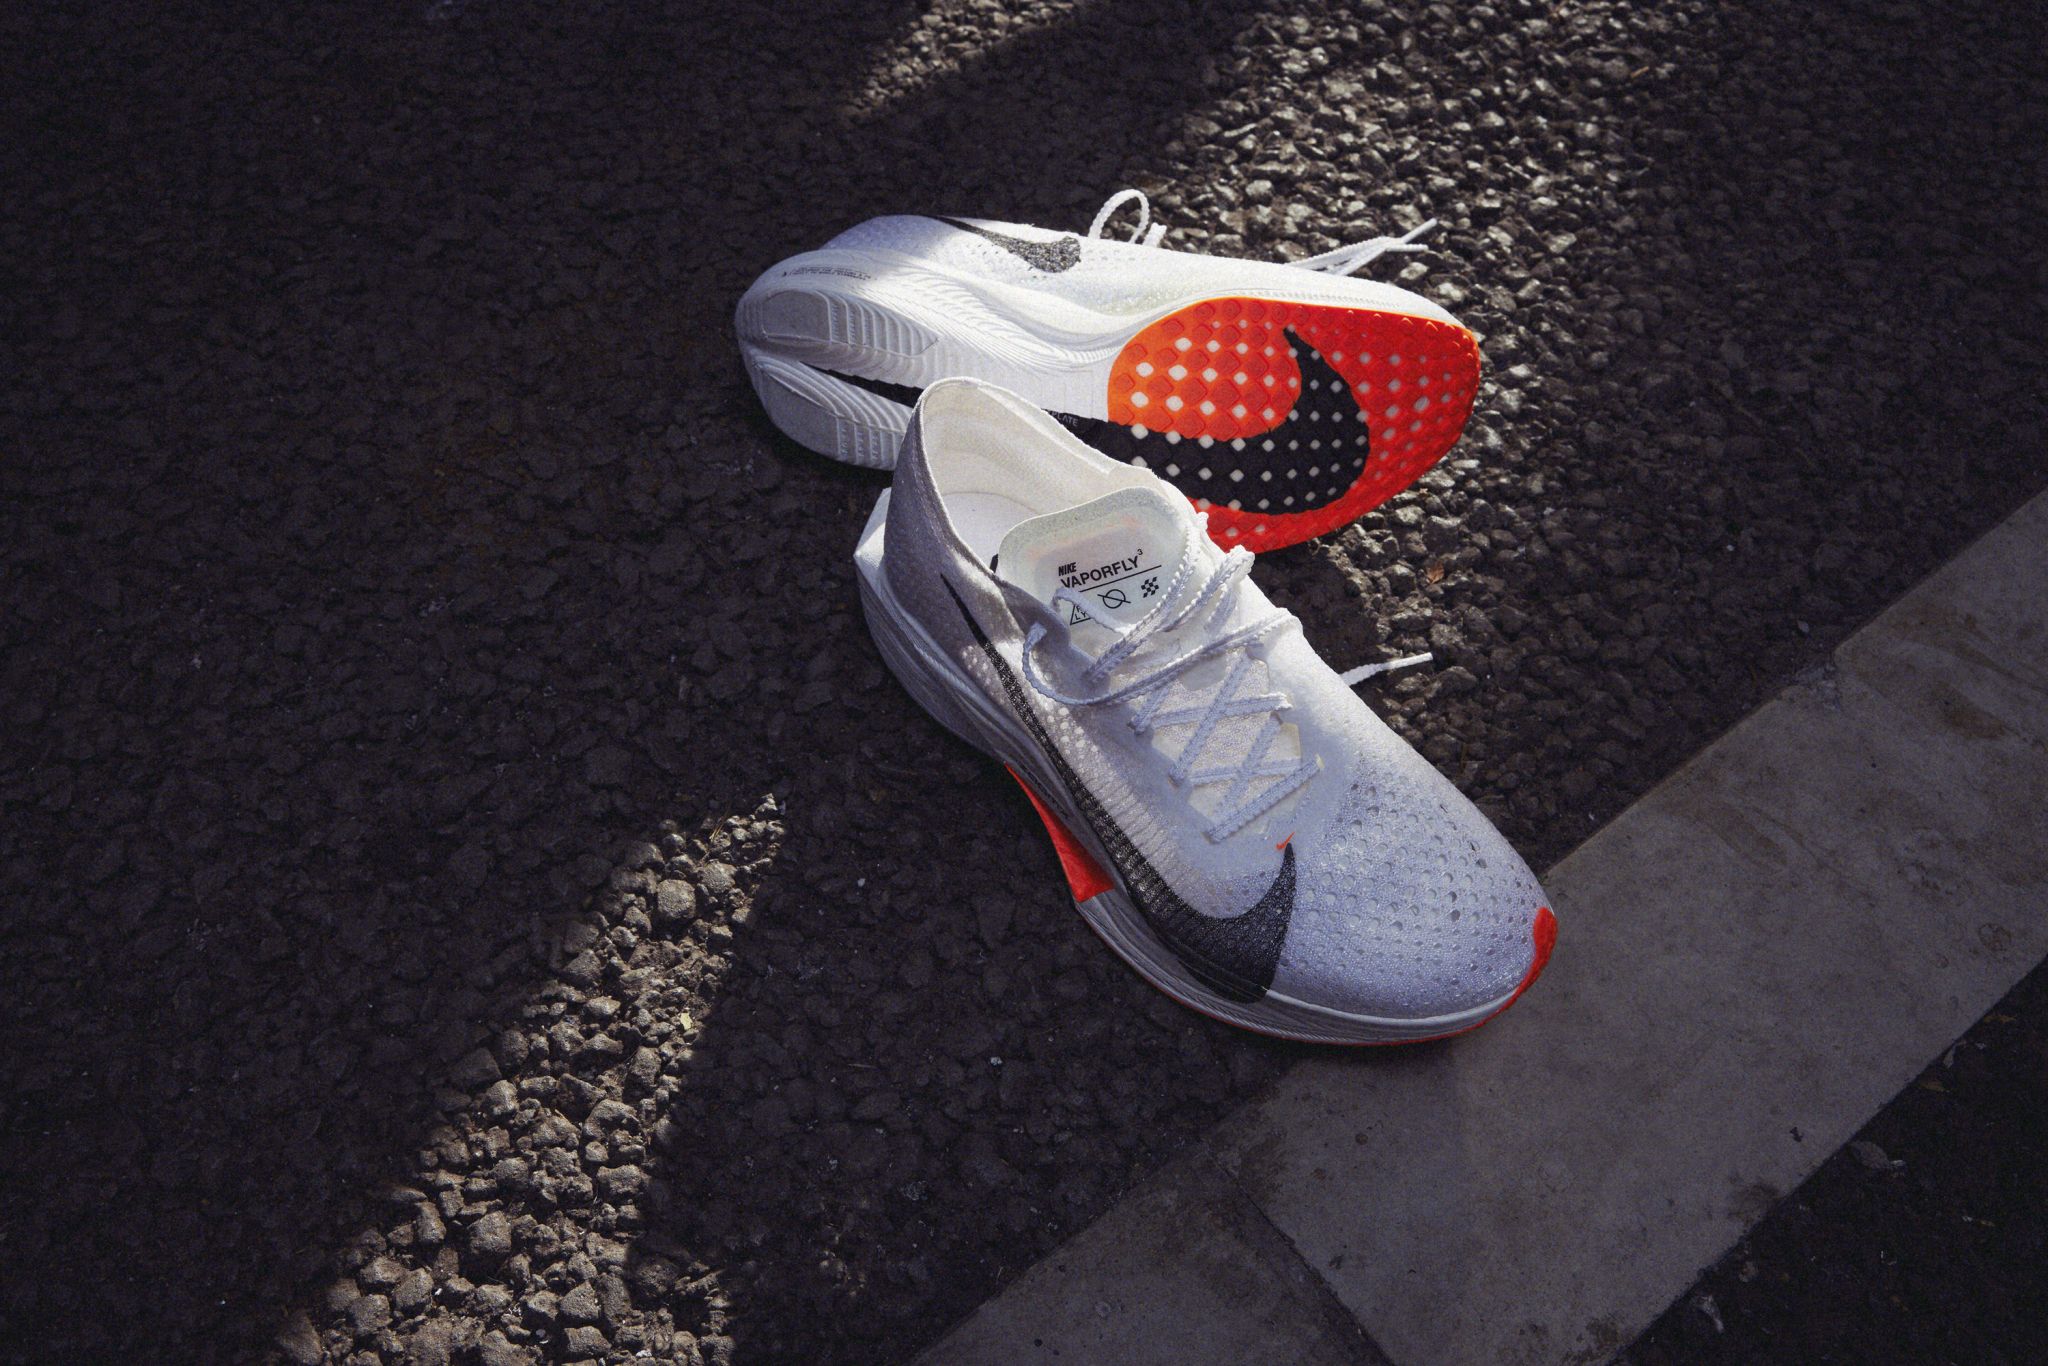 A Sneak Peek at Nike's Latest Super Shoe, The Vaporfly 3 - InsideHook